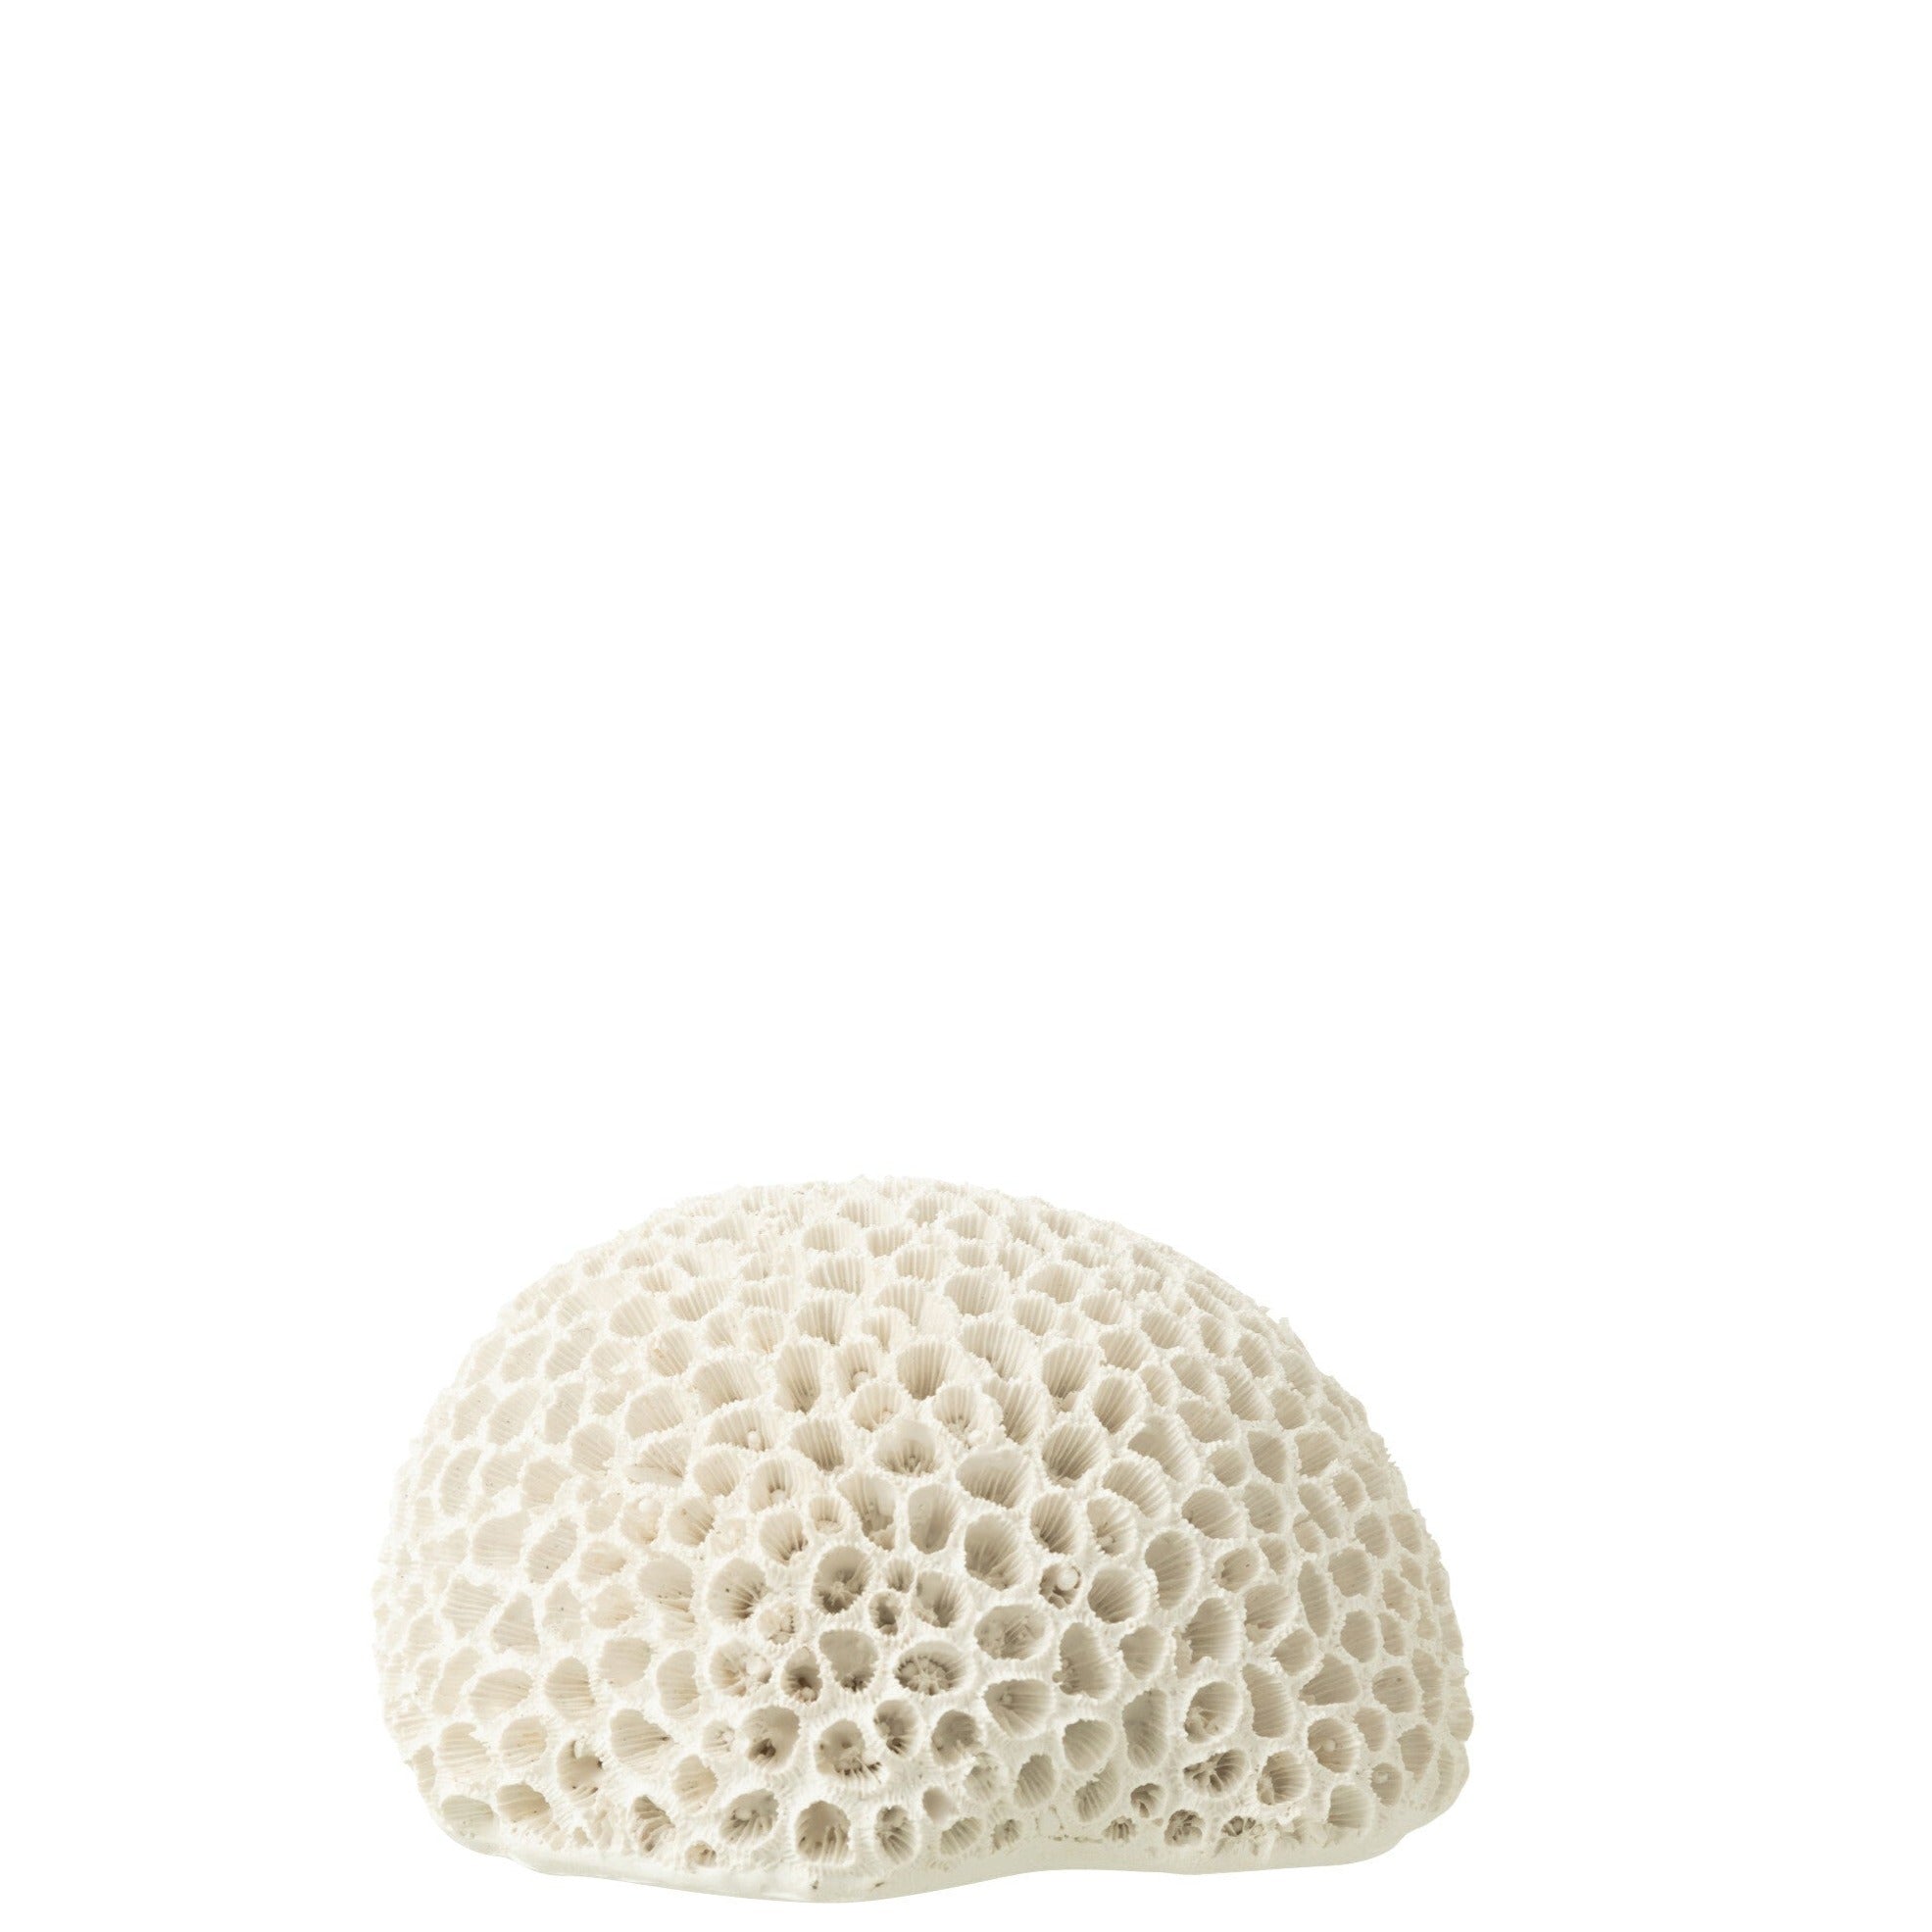 Decorative Round White Coral